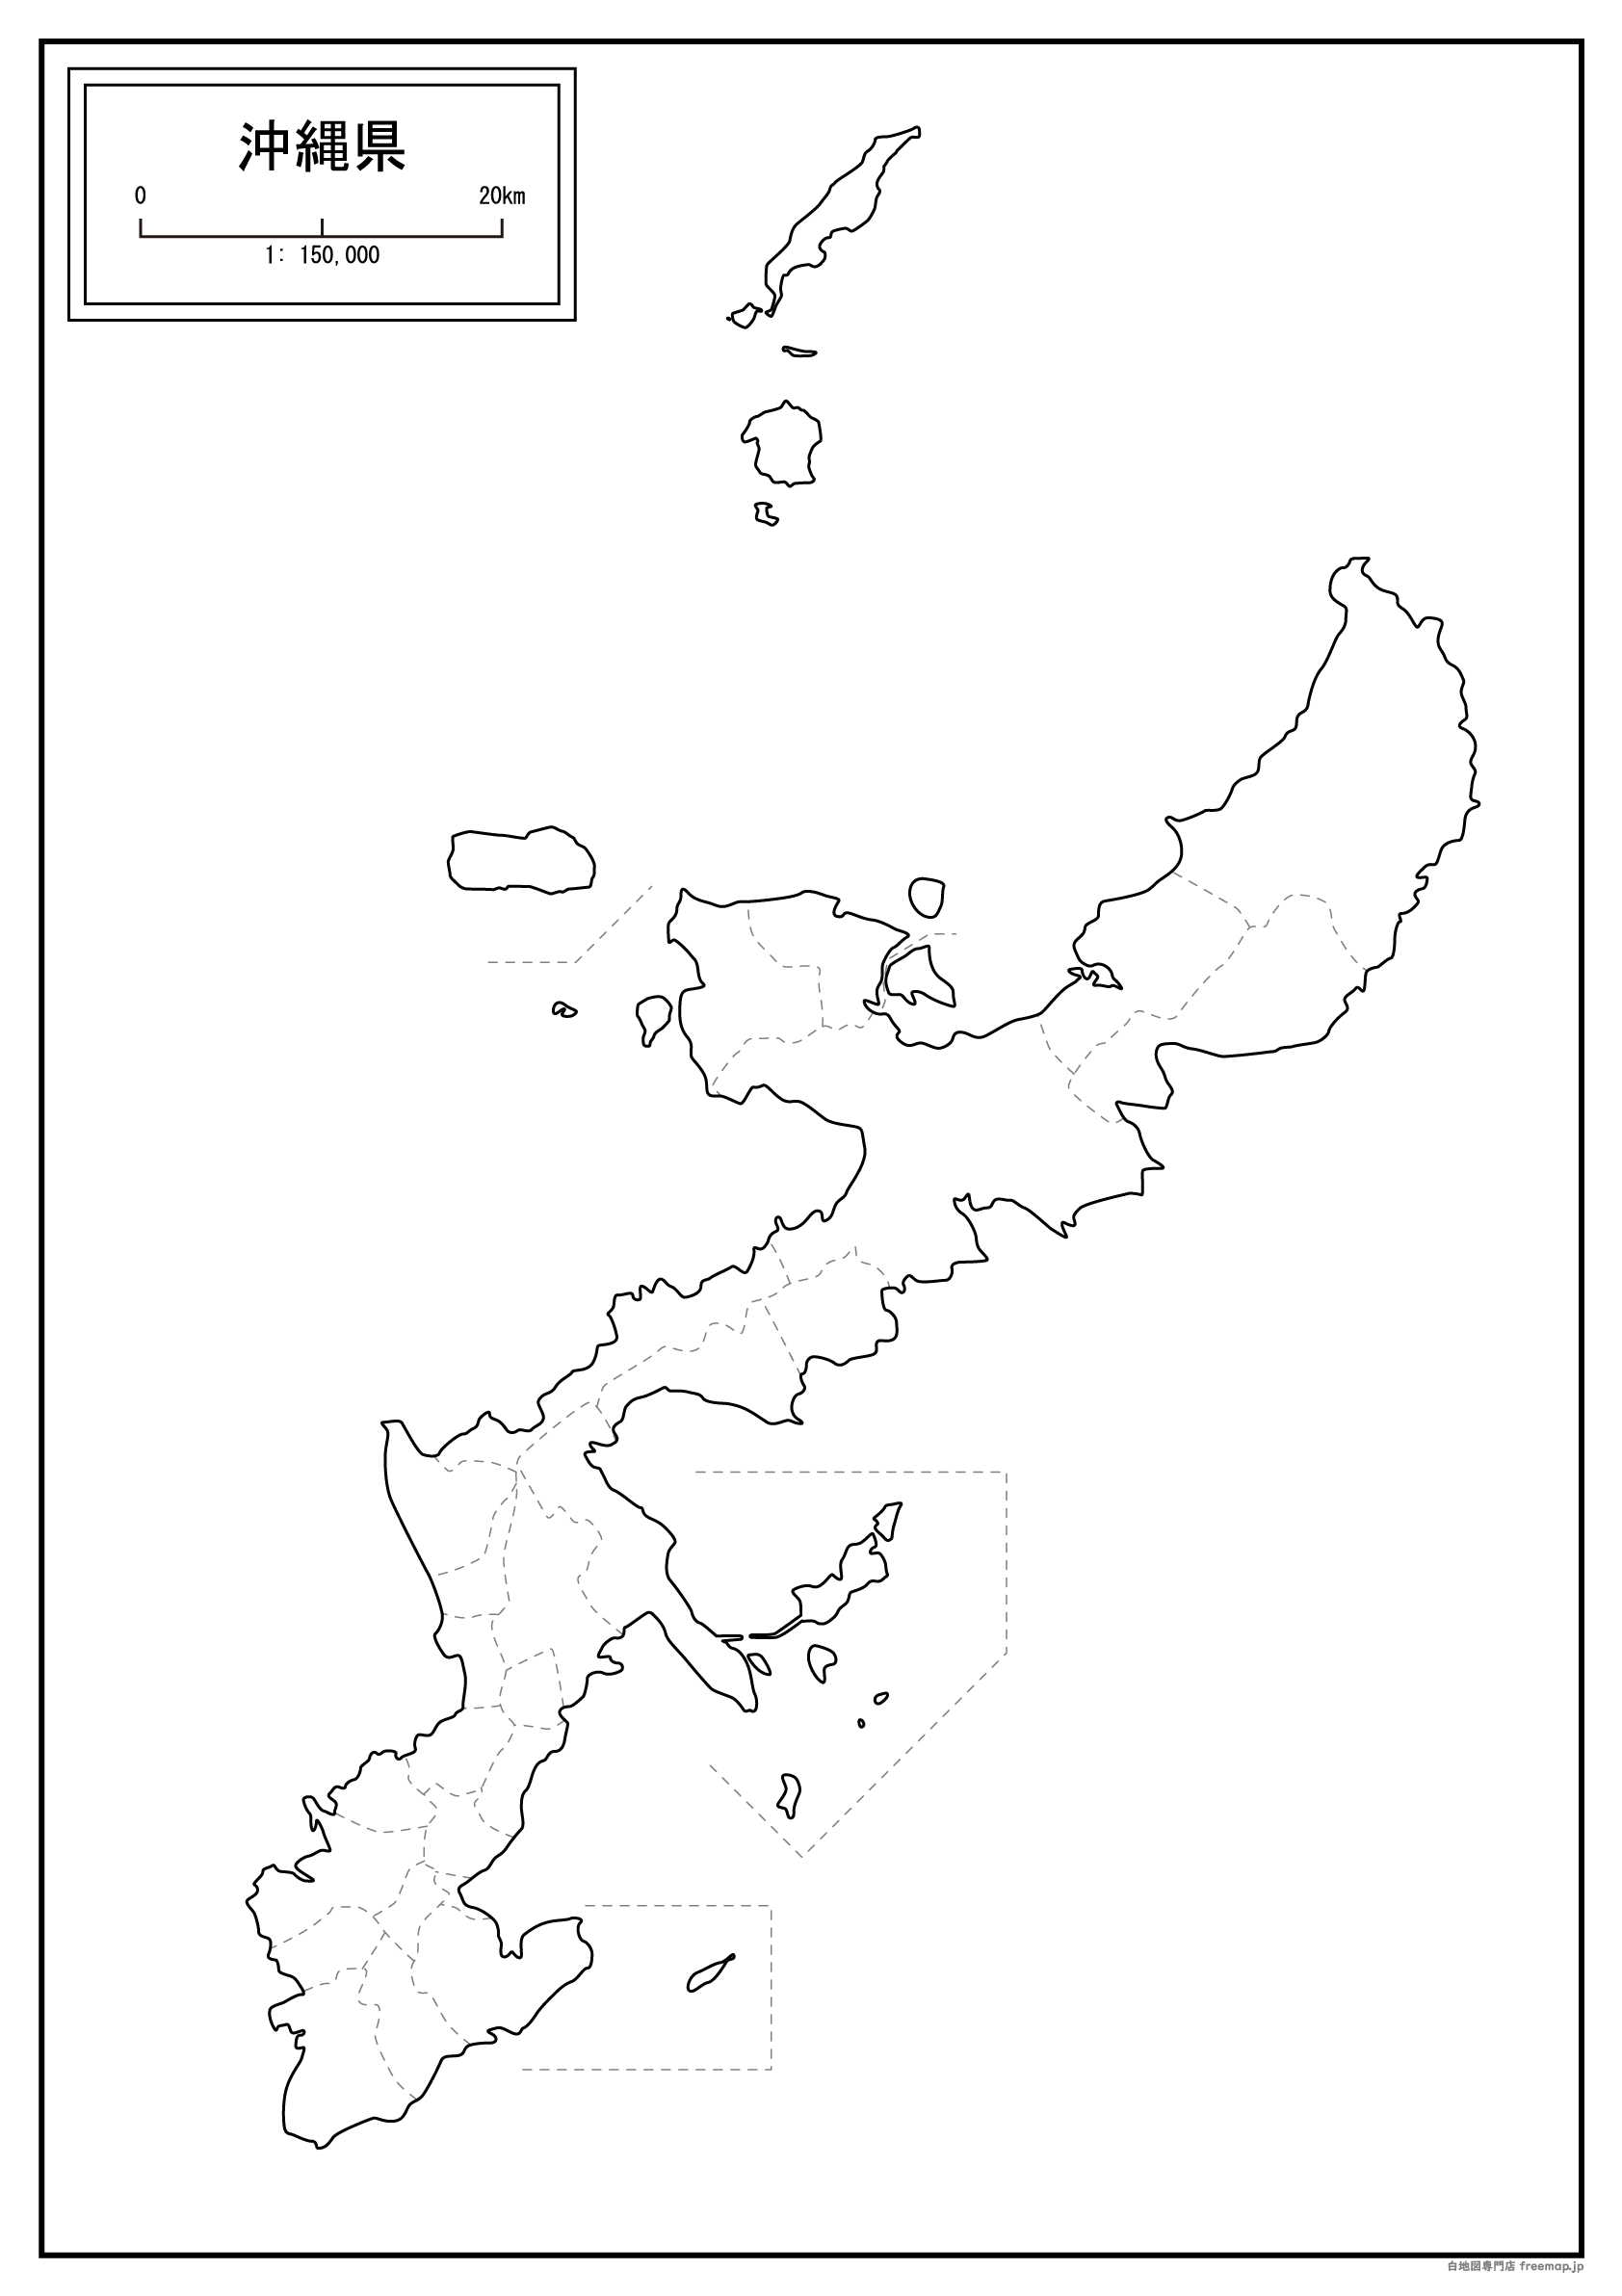 沖縄県本島周辺図のサムネイル